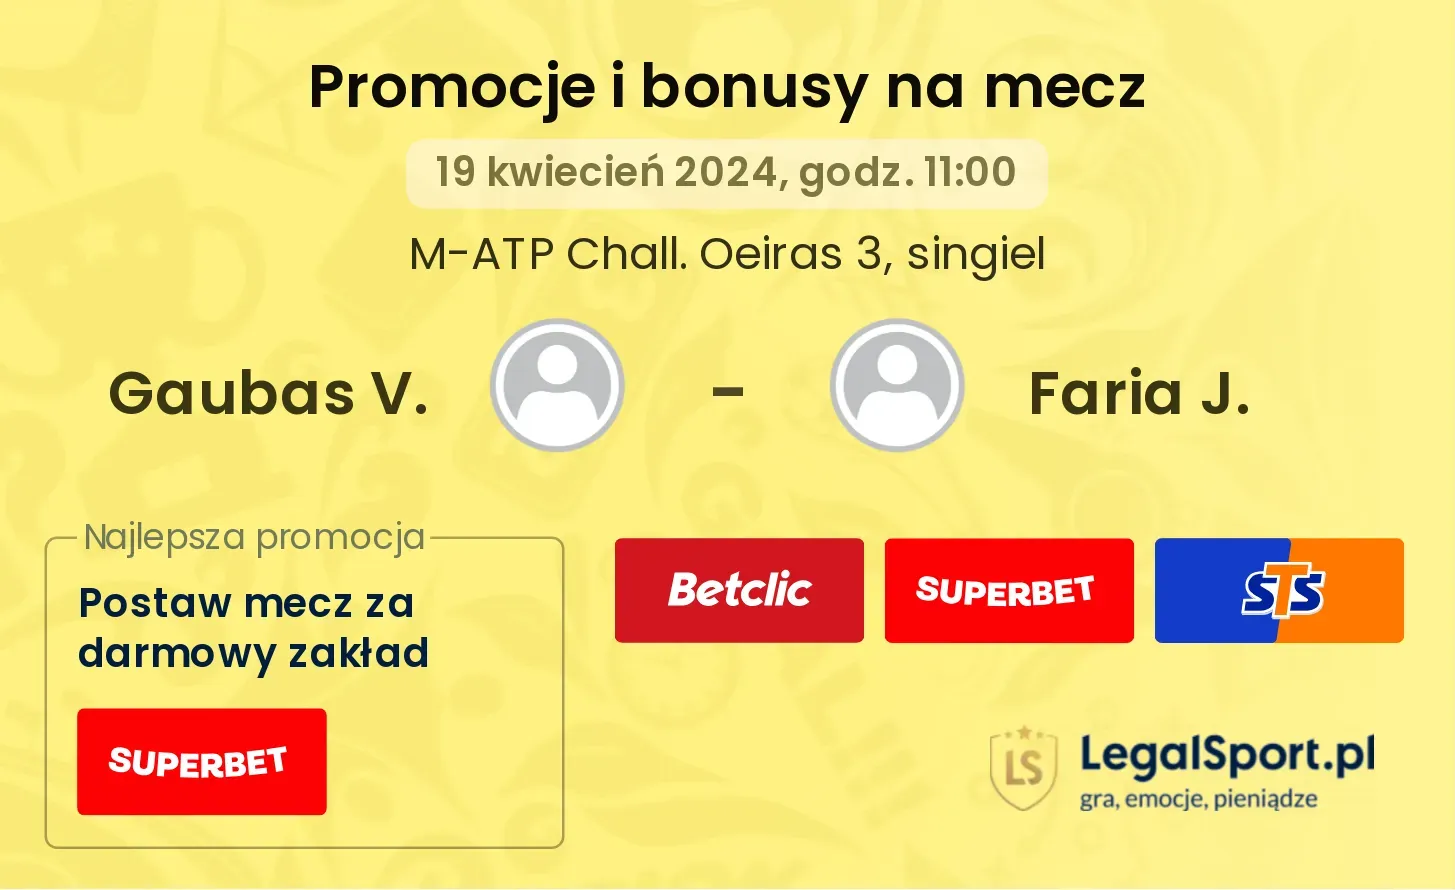 Gaubas V. - Faria J. promocje bonusy na mecz